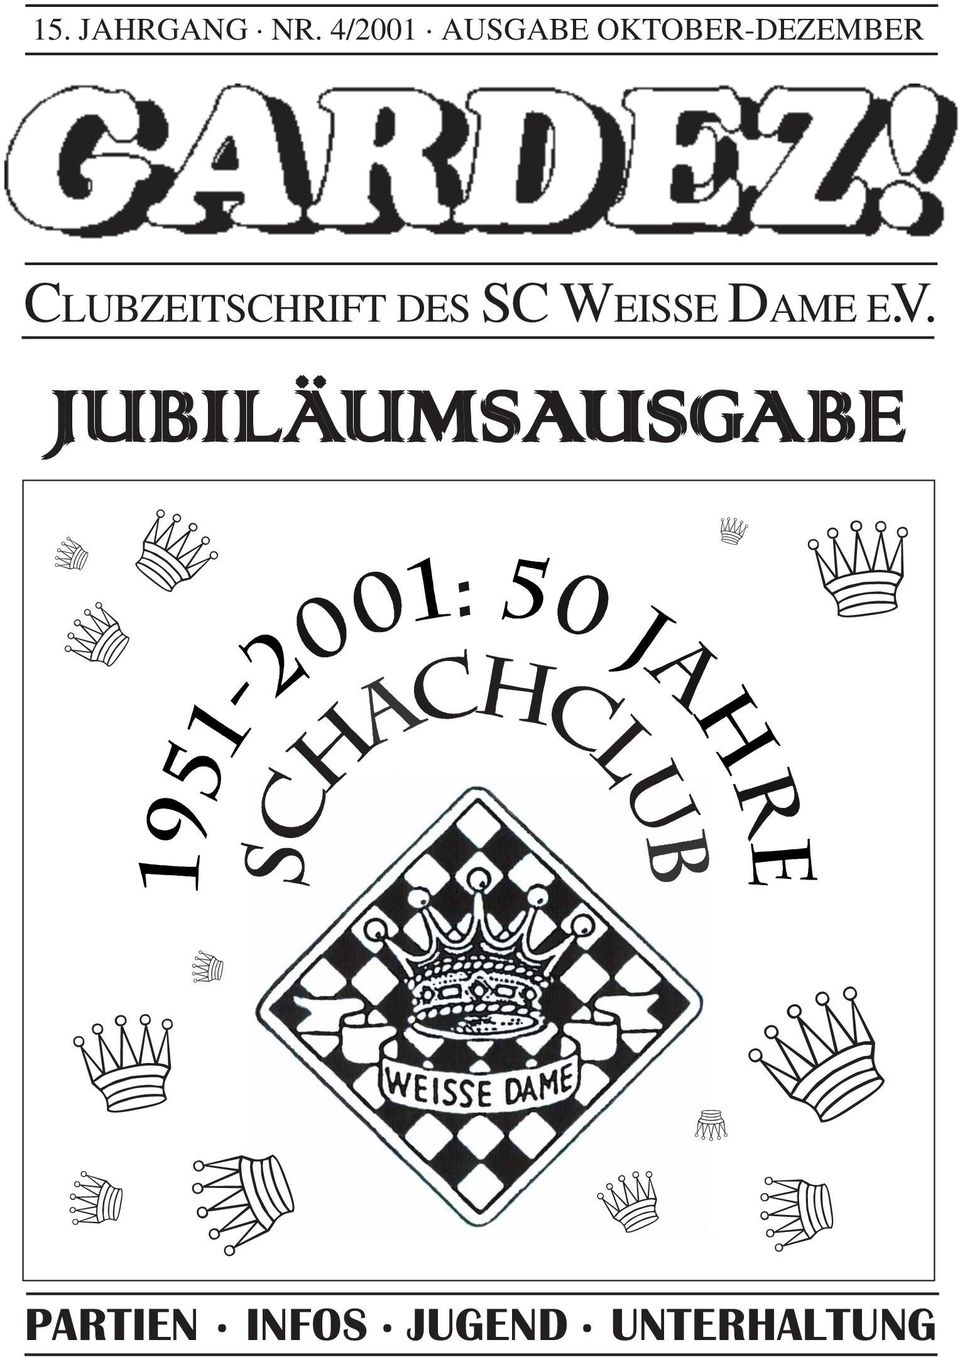 CLUBZEITSCHRIFT DES SC WEISSE DAME E.V.